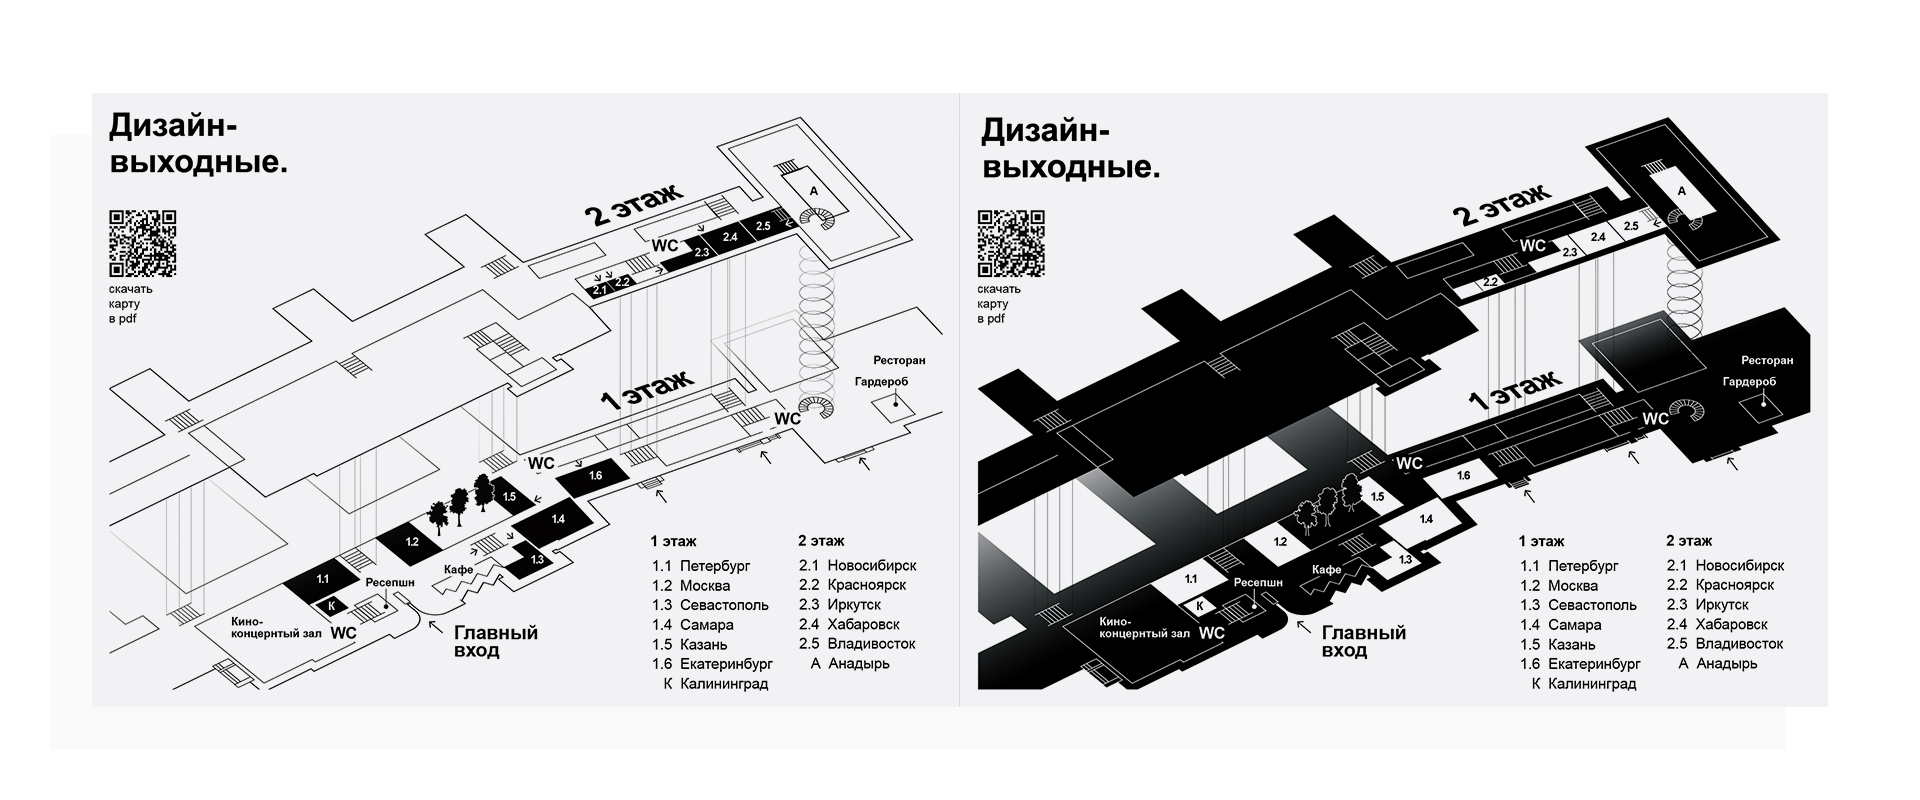 Схема залов ГТК Суздаль